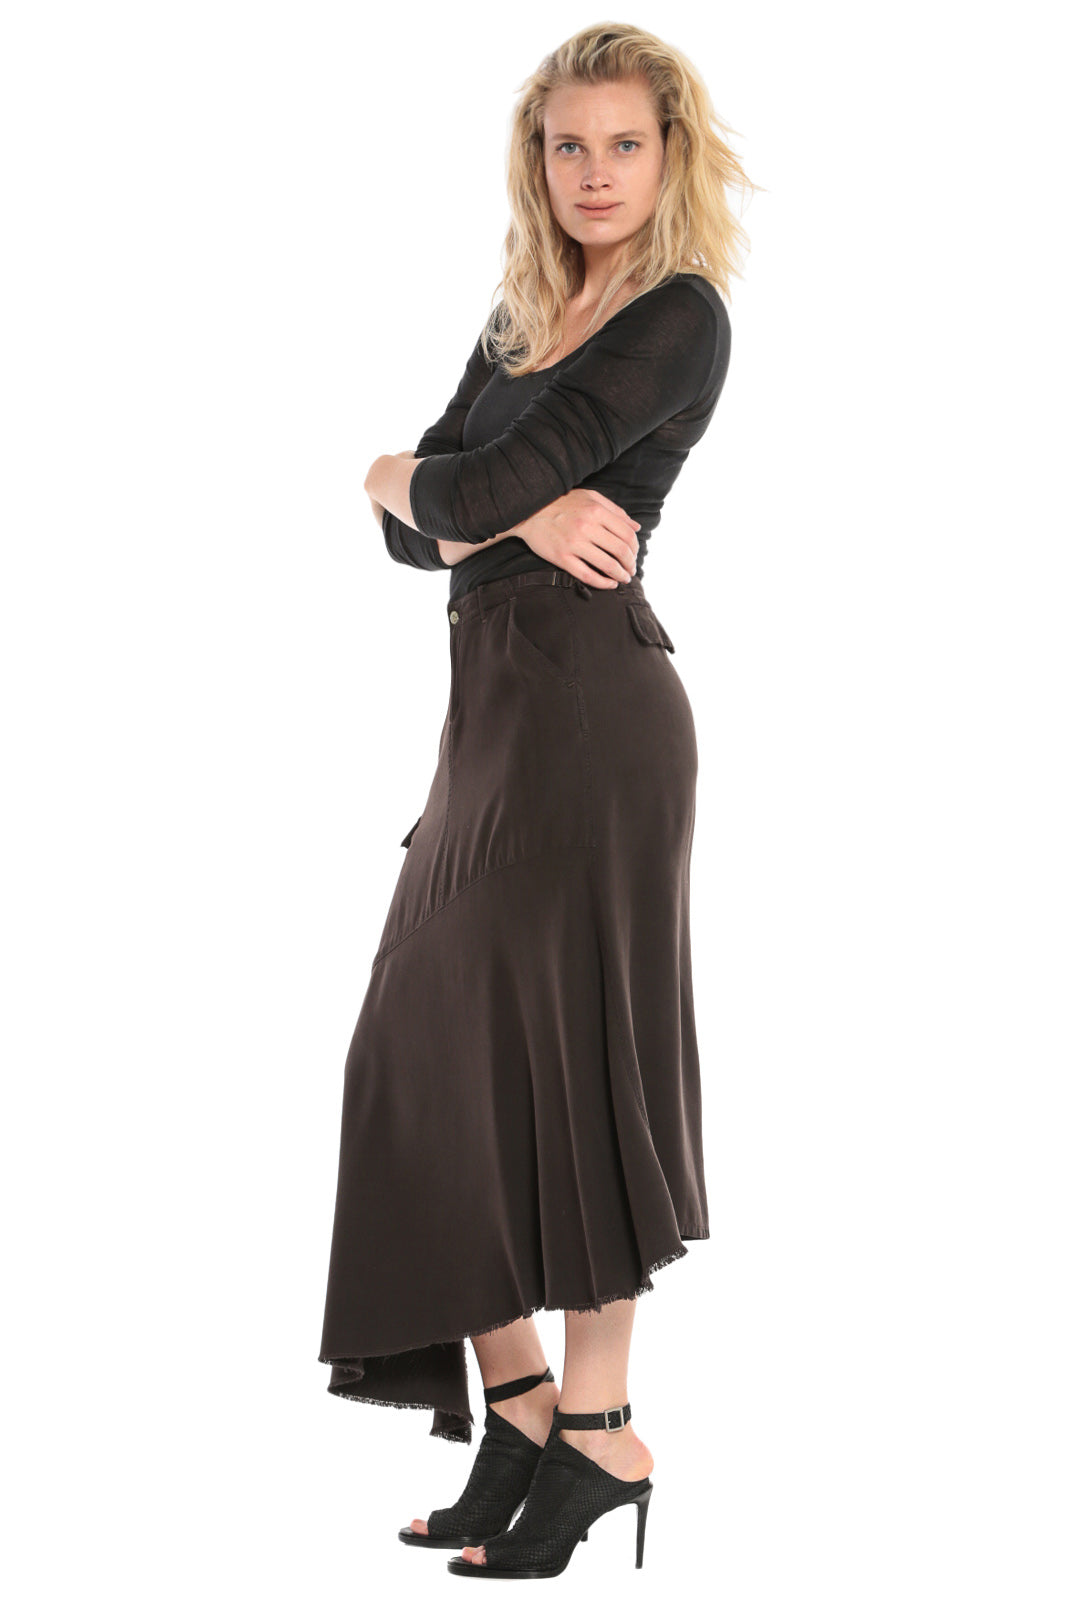 100% Silk asymmetric skirt in Licorice